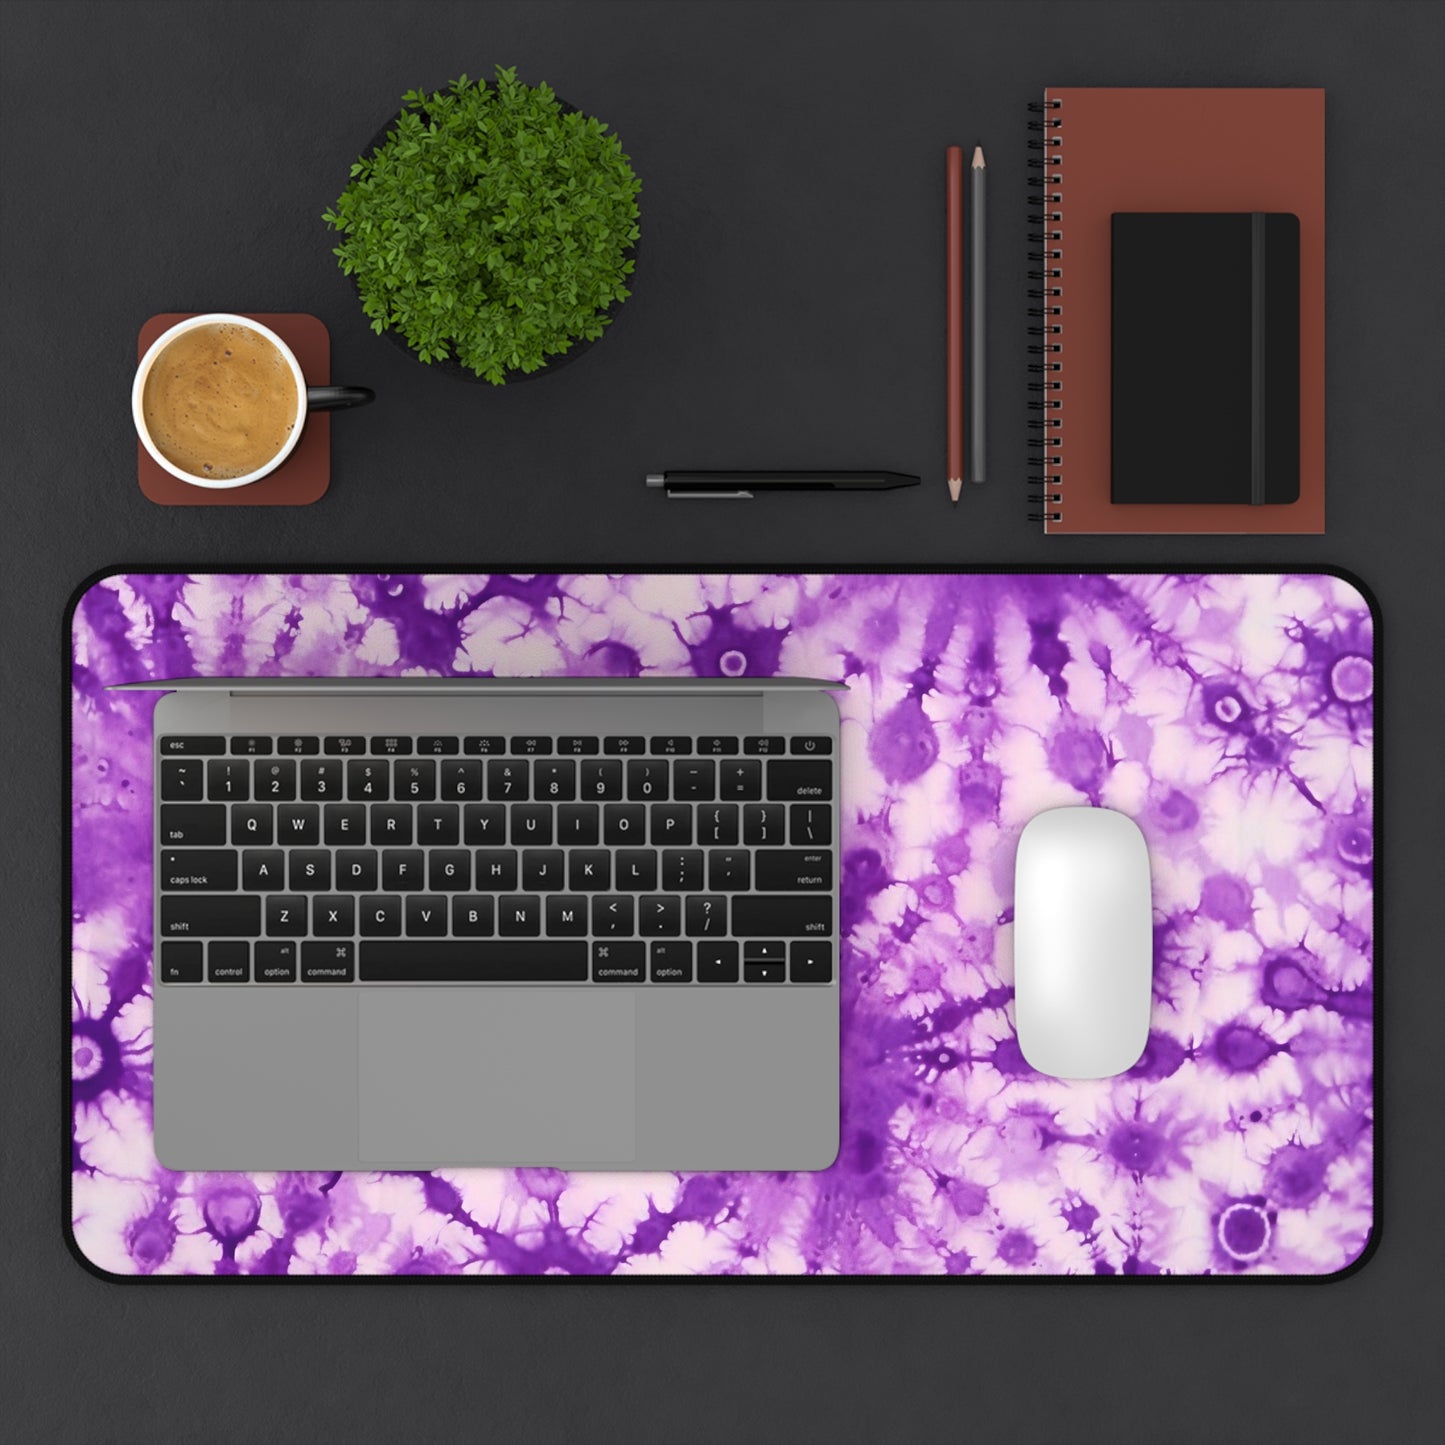 Purple Tie Dye Desk Mat, Tie-dye Desk Pad, Extra Large Mouse Pad, Large Keyboard Mat, Desk Accessory